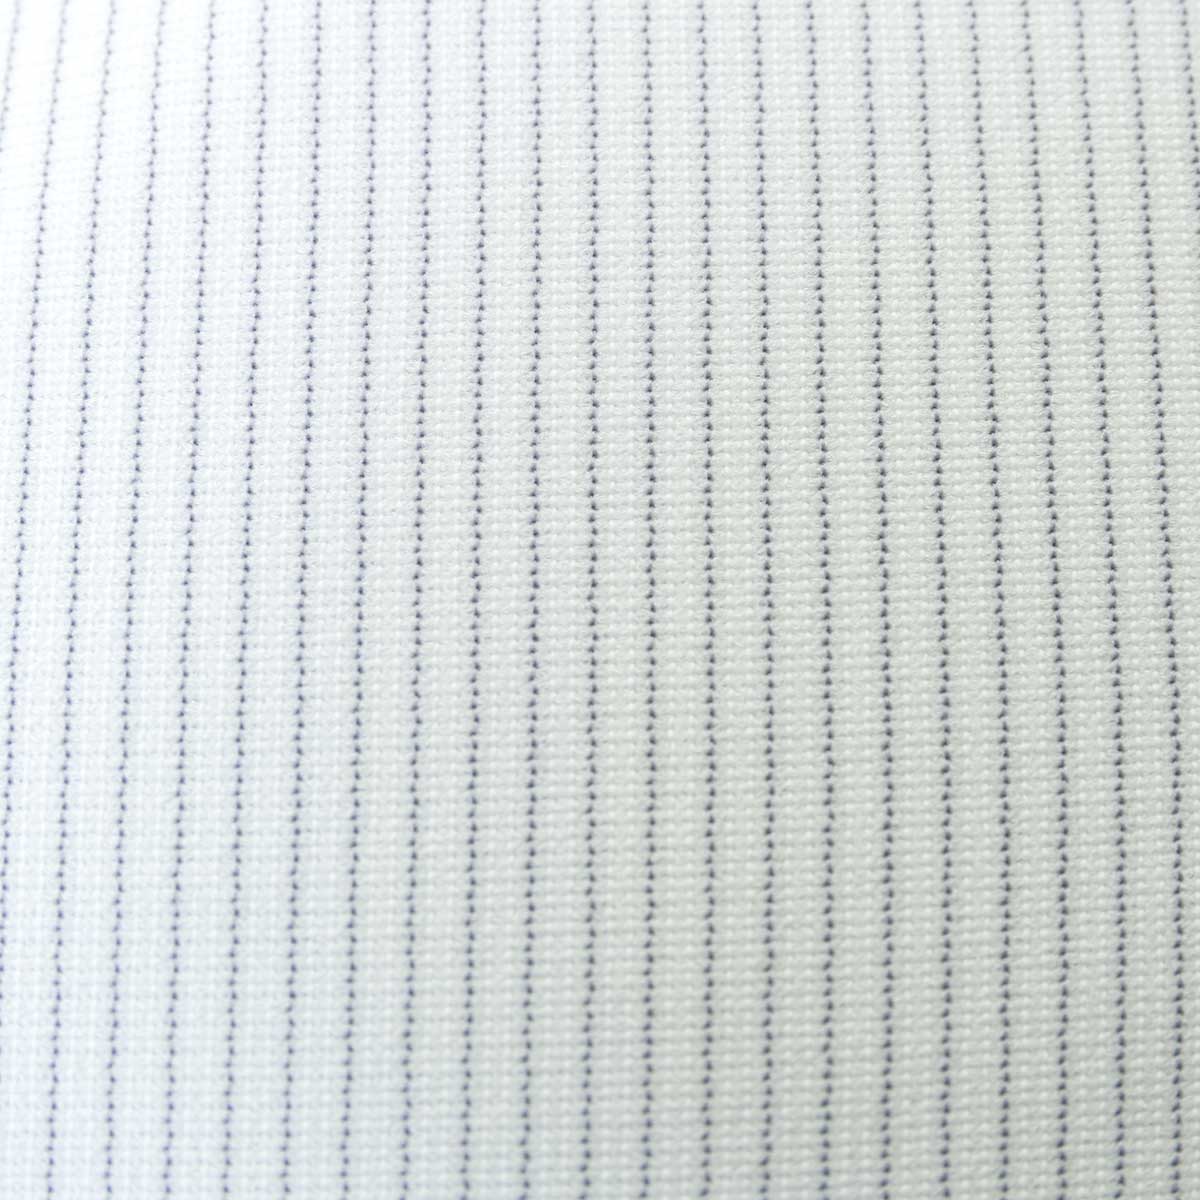 SHIRT HOUSE・ブルーレーベル 半袖 ニットシャツ(裄詰不可)カッタウェイ グレー ワイシャツ